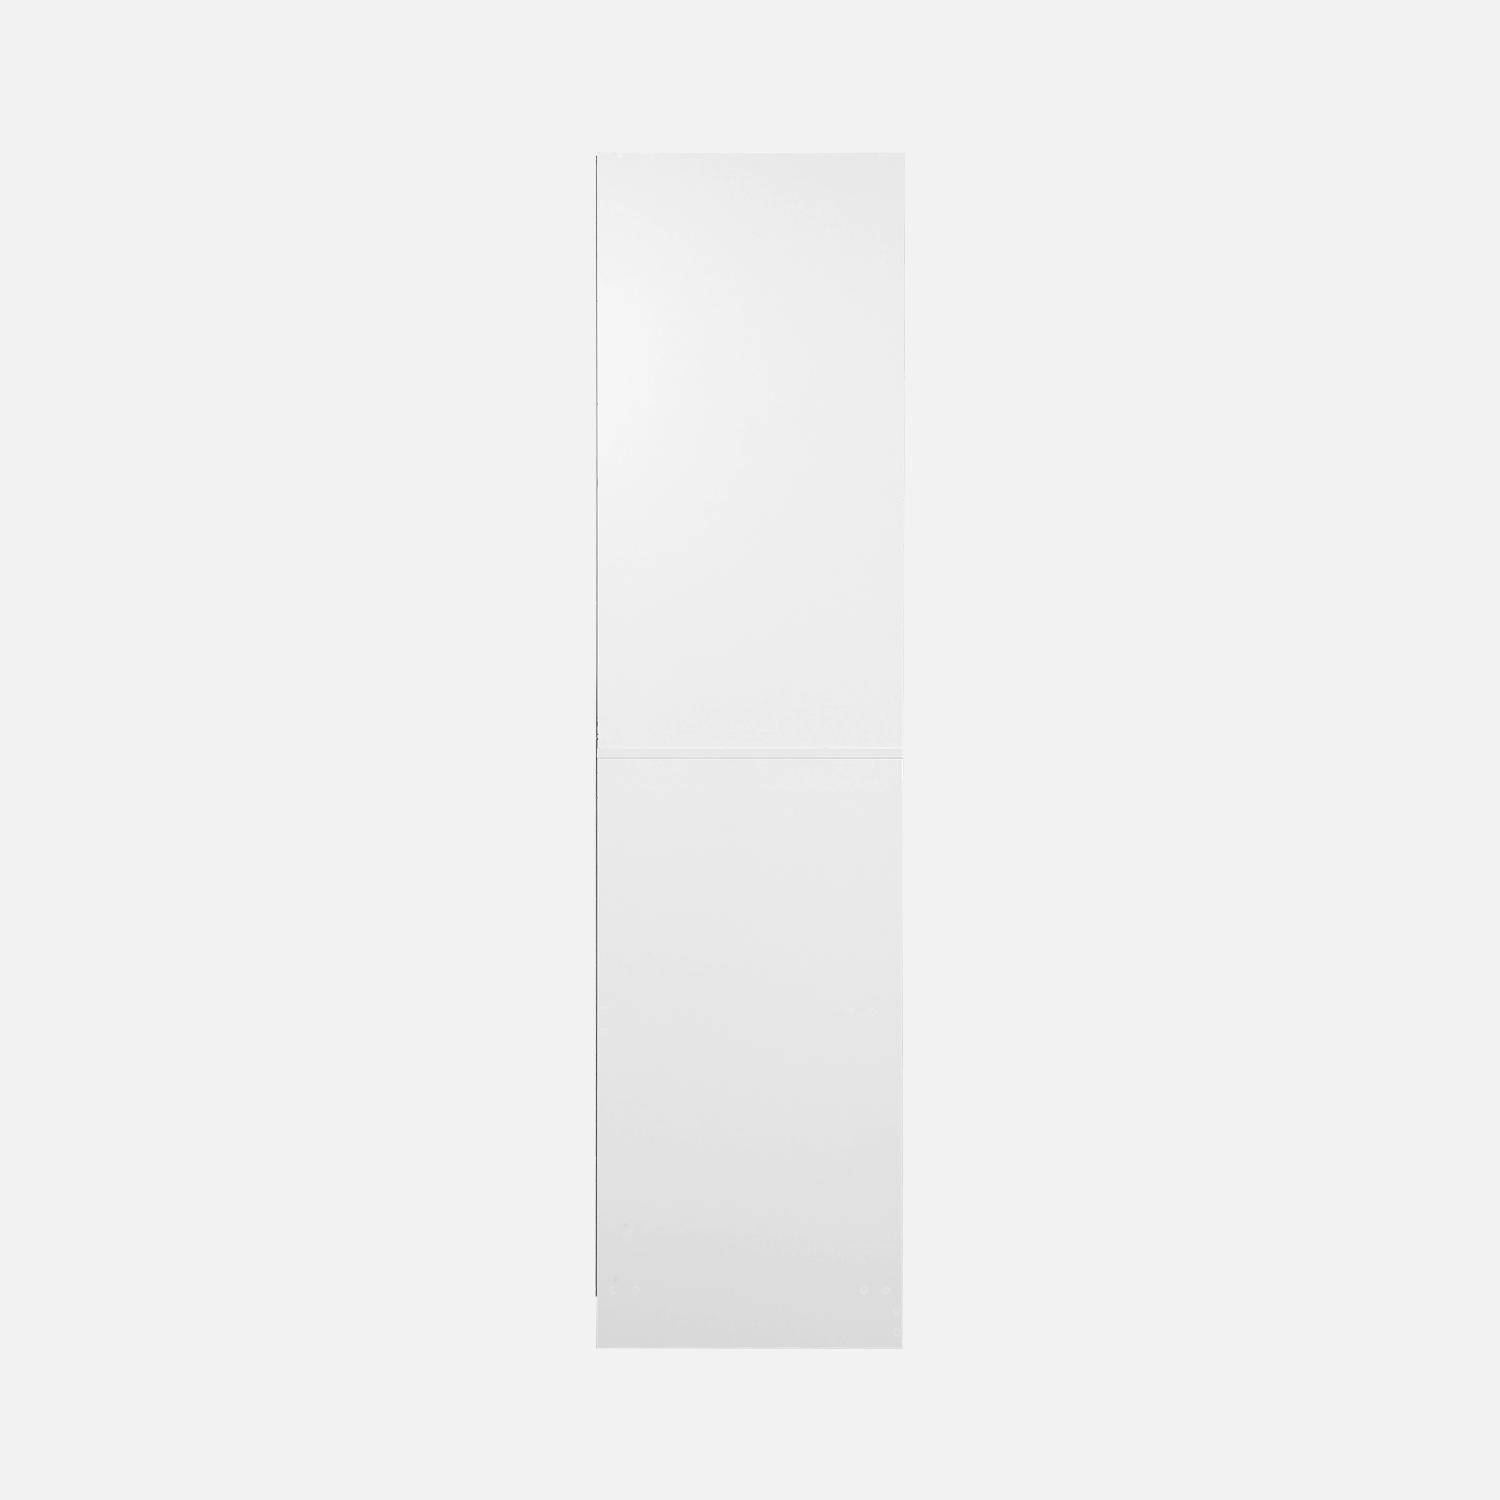 Kleerkastmodule met kleerkast en broekenhanger, wit, gelamineerde panelen Photo6